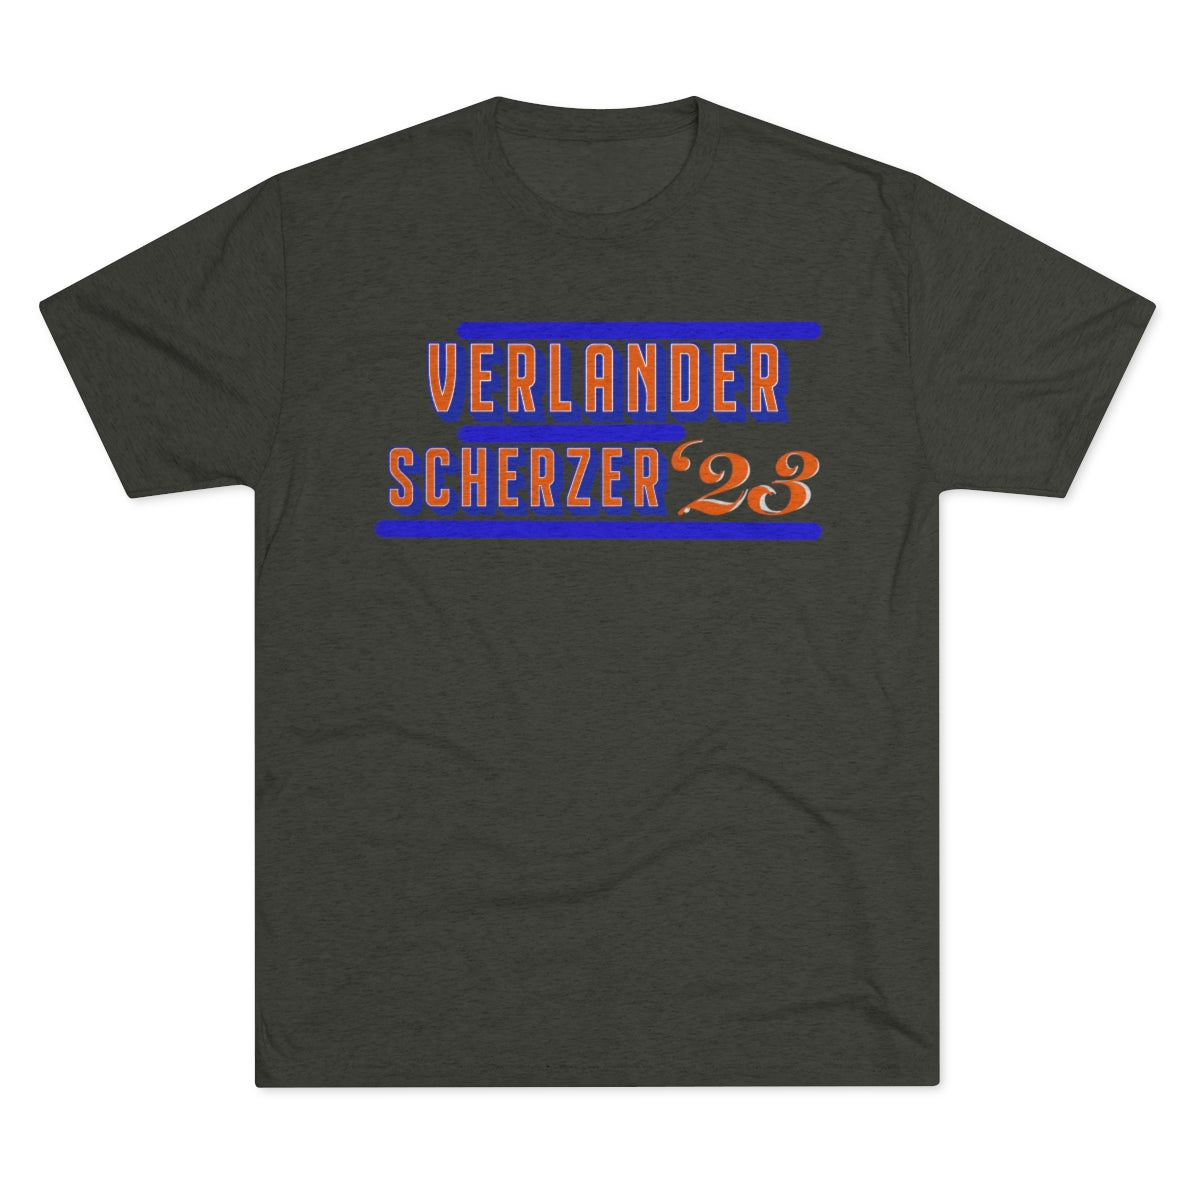 Mets Verlander Scherzer ‘23 Shirt - IsGoodBrand